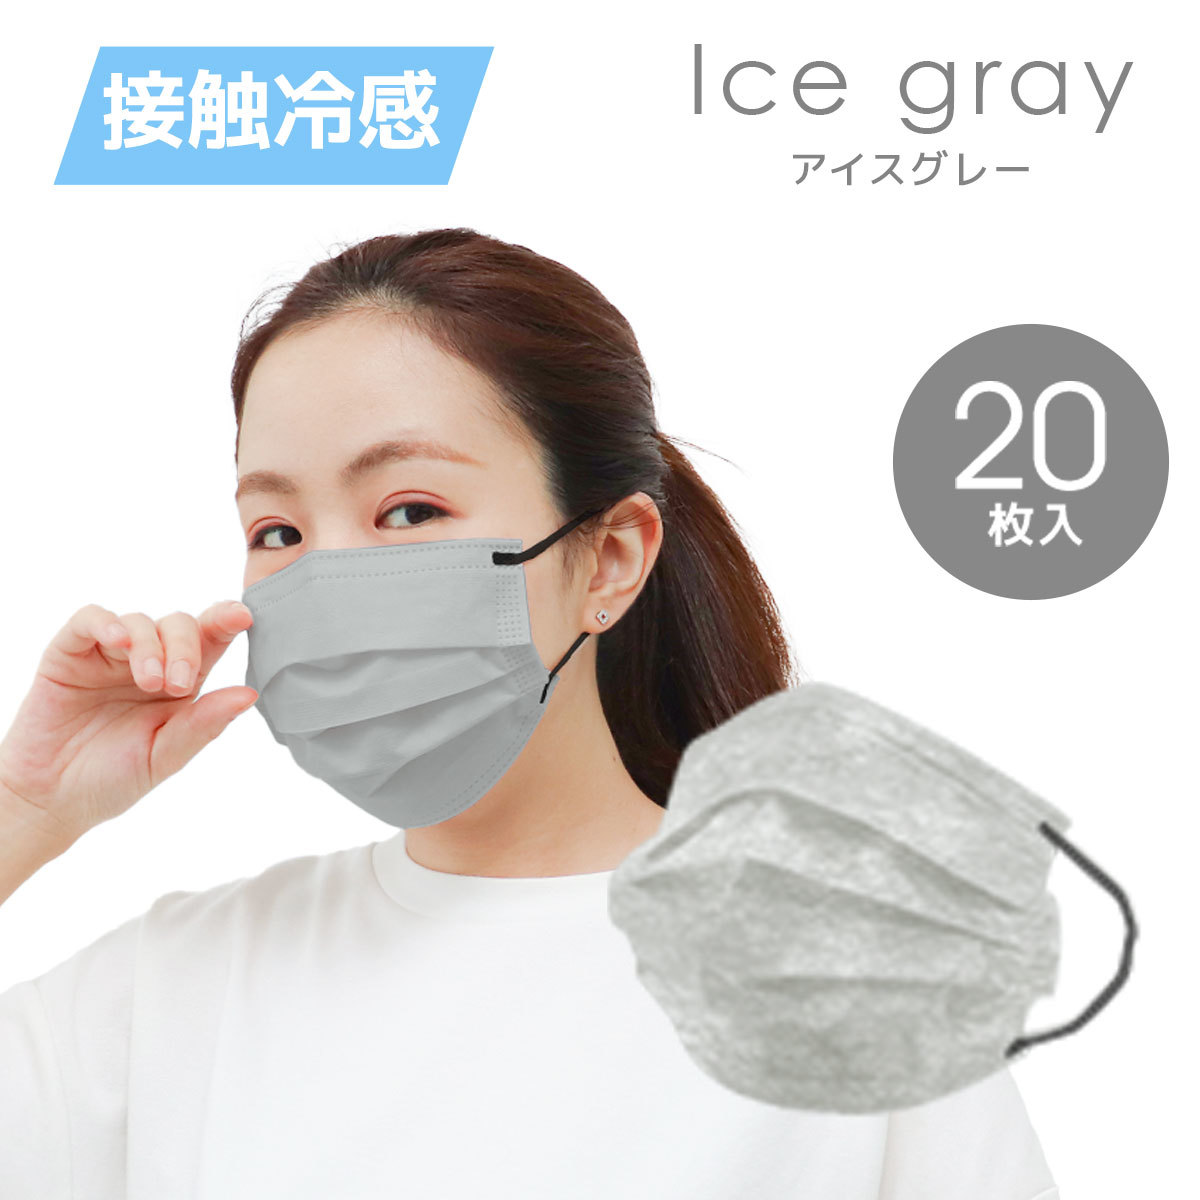  охлаждающий маска 20 листов лёд серый плиссировать модель 3 слой структура нетканый материал швейная резинка контакт охлаждающий цвет маска 175×95